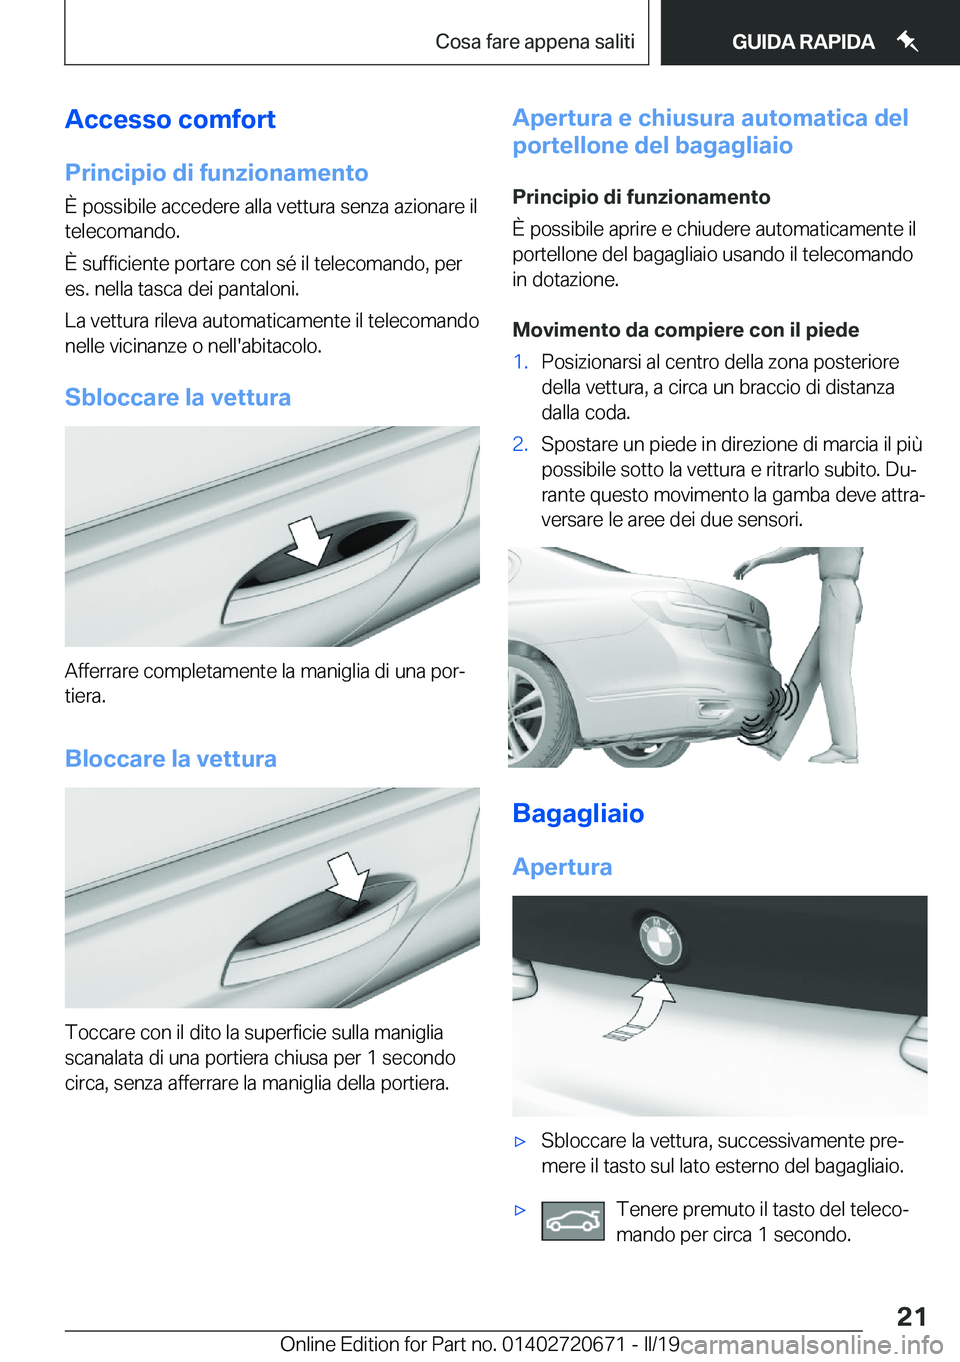 BMW M5 2019  Libretti Di Uso E manutenzione (in Italian) �A�c�c�e�s�s�o��c�o�m�f�o�r�t
�P�r�i�n�c�i�p�i�o��d�i��f�u�n�z�i�o�n�a�m�e�n�t�o �